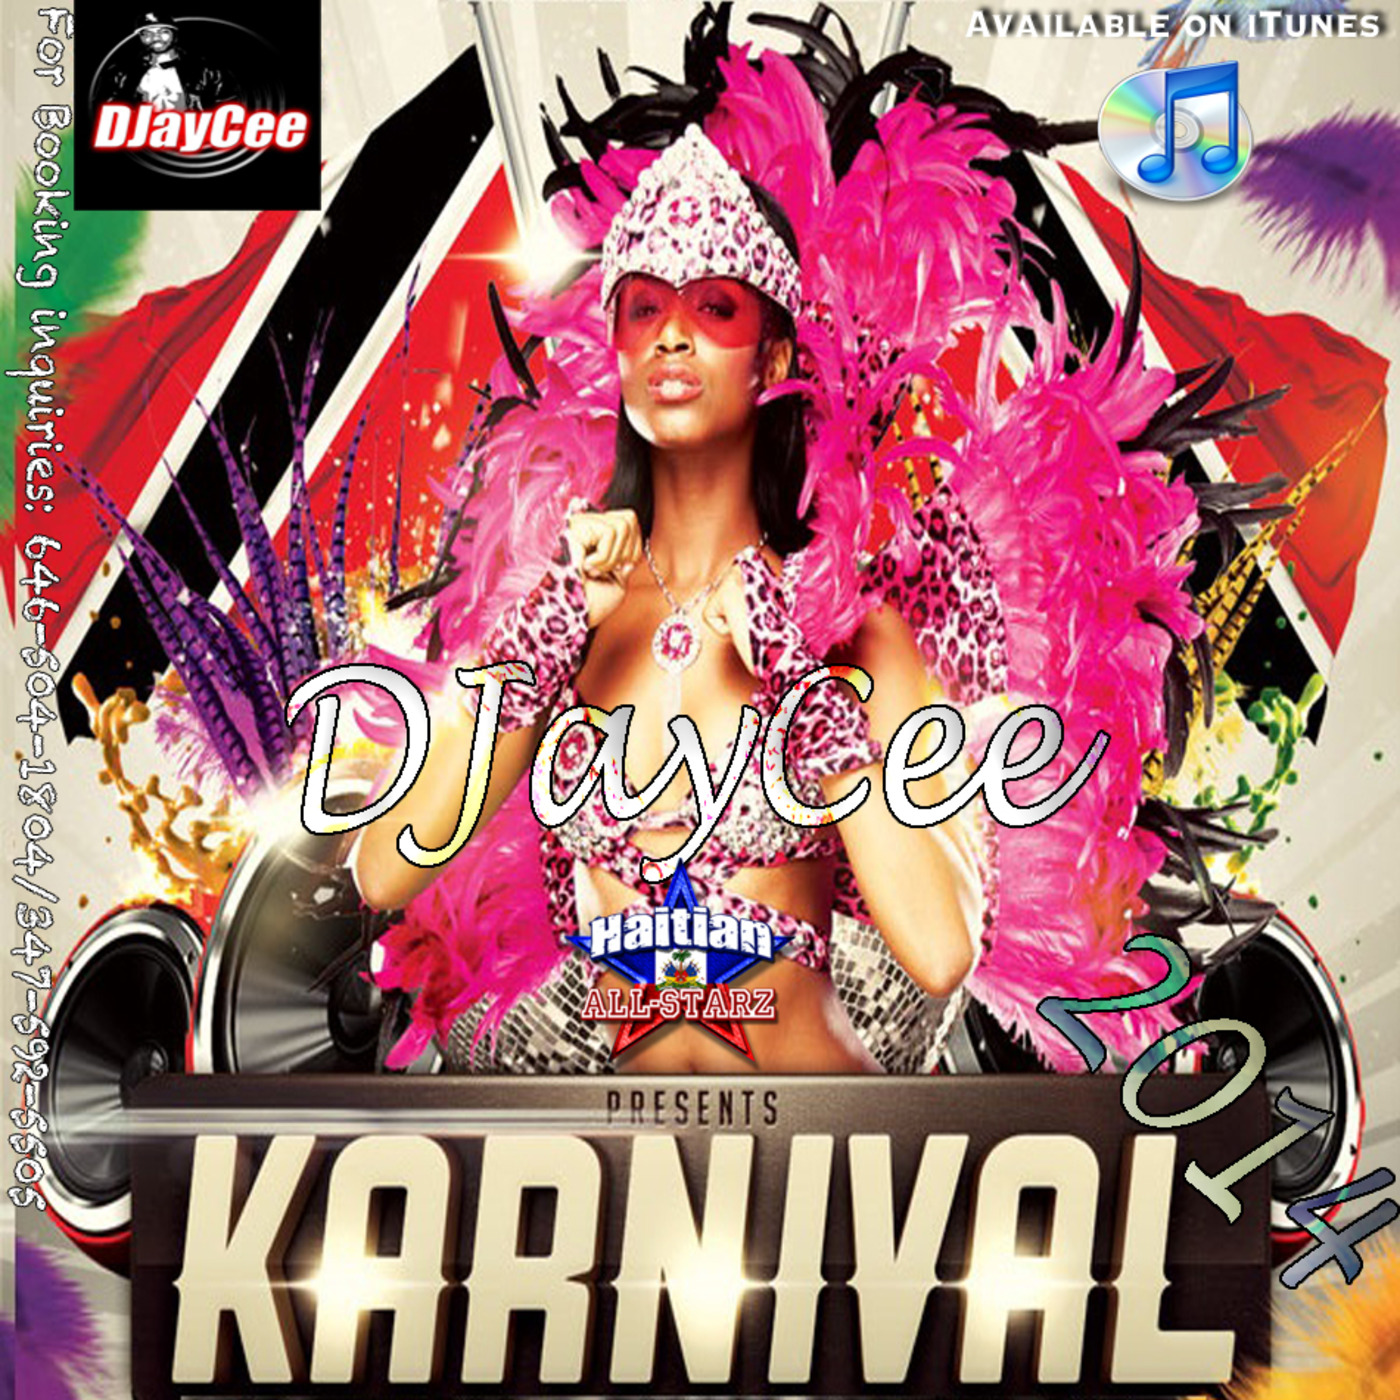 Karnival 2014 (Soca Madness) - DJayCee {Haitian All-StarZ DJs}